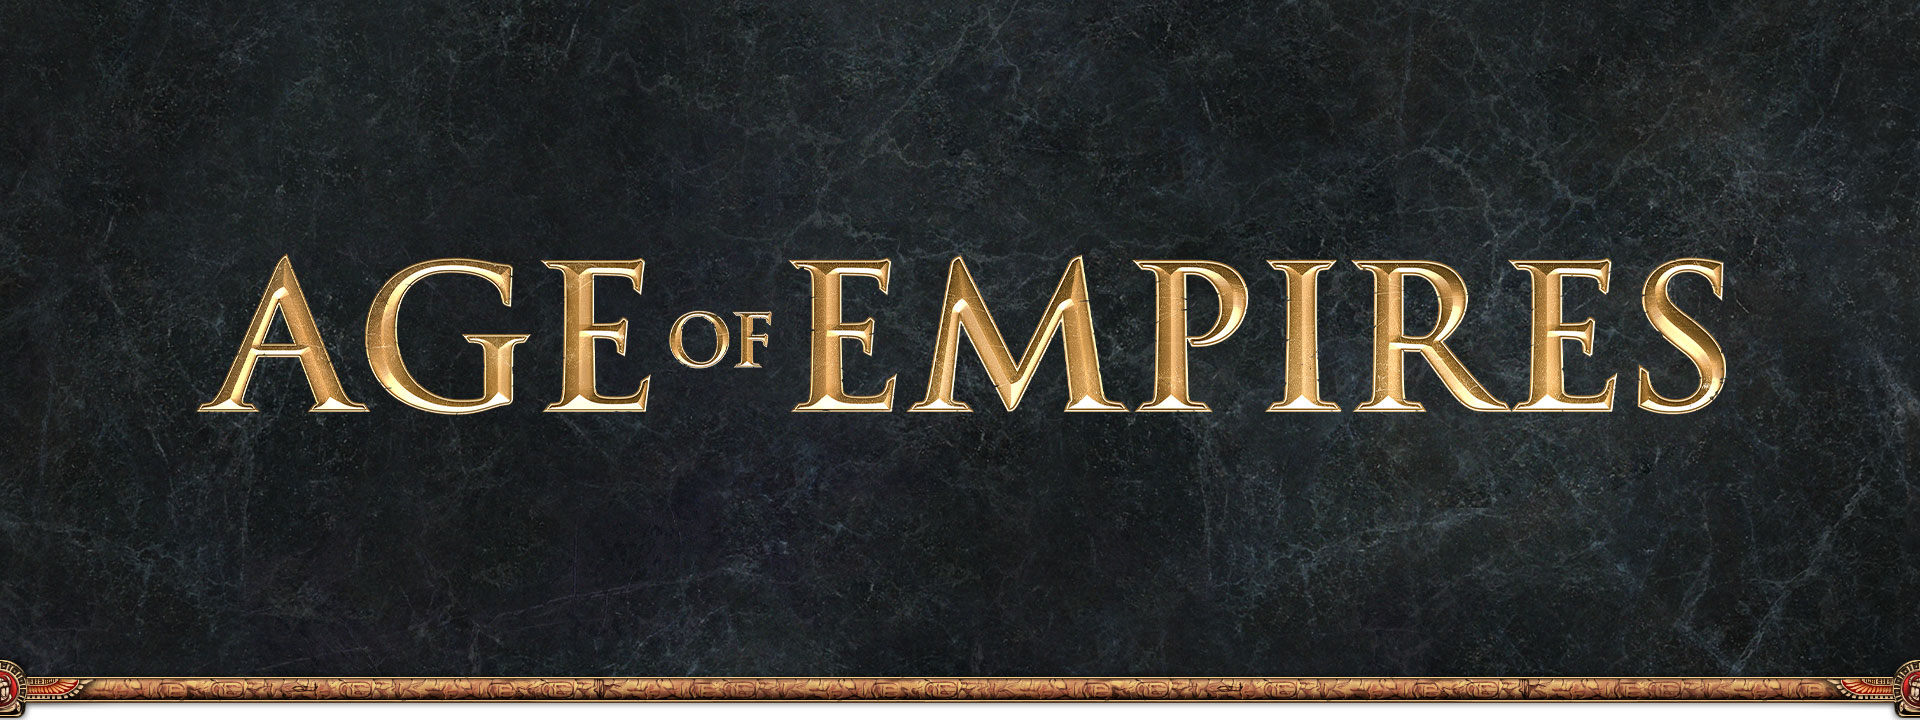 회색 점판암 배경 위에 그려진 Age of Empires 로고